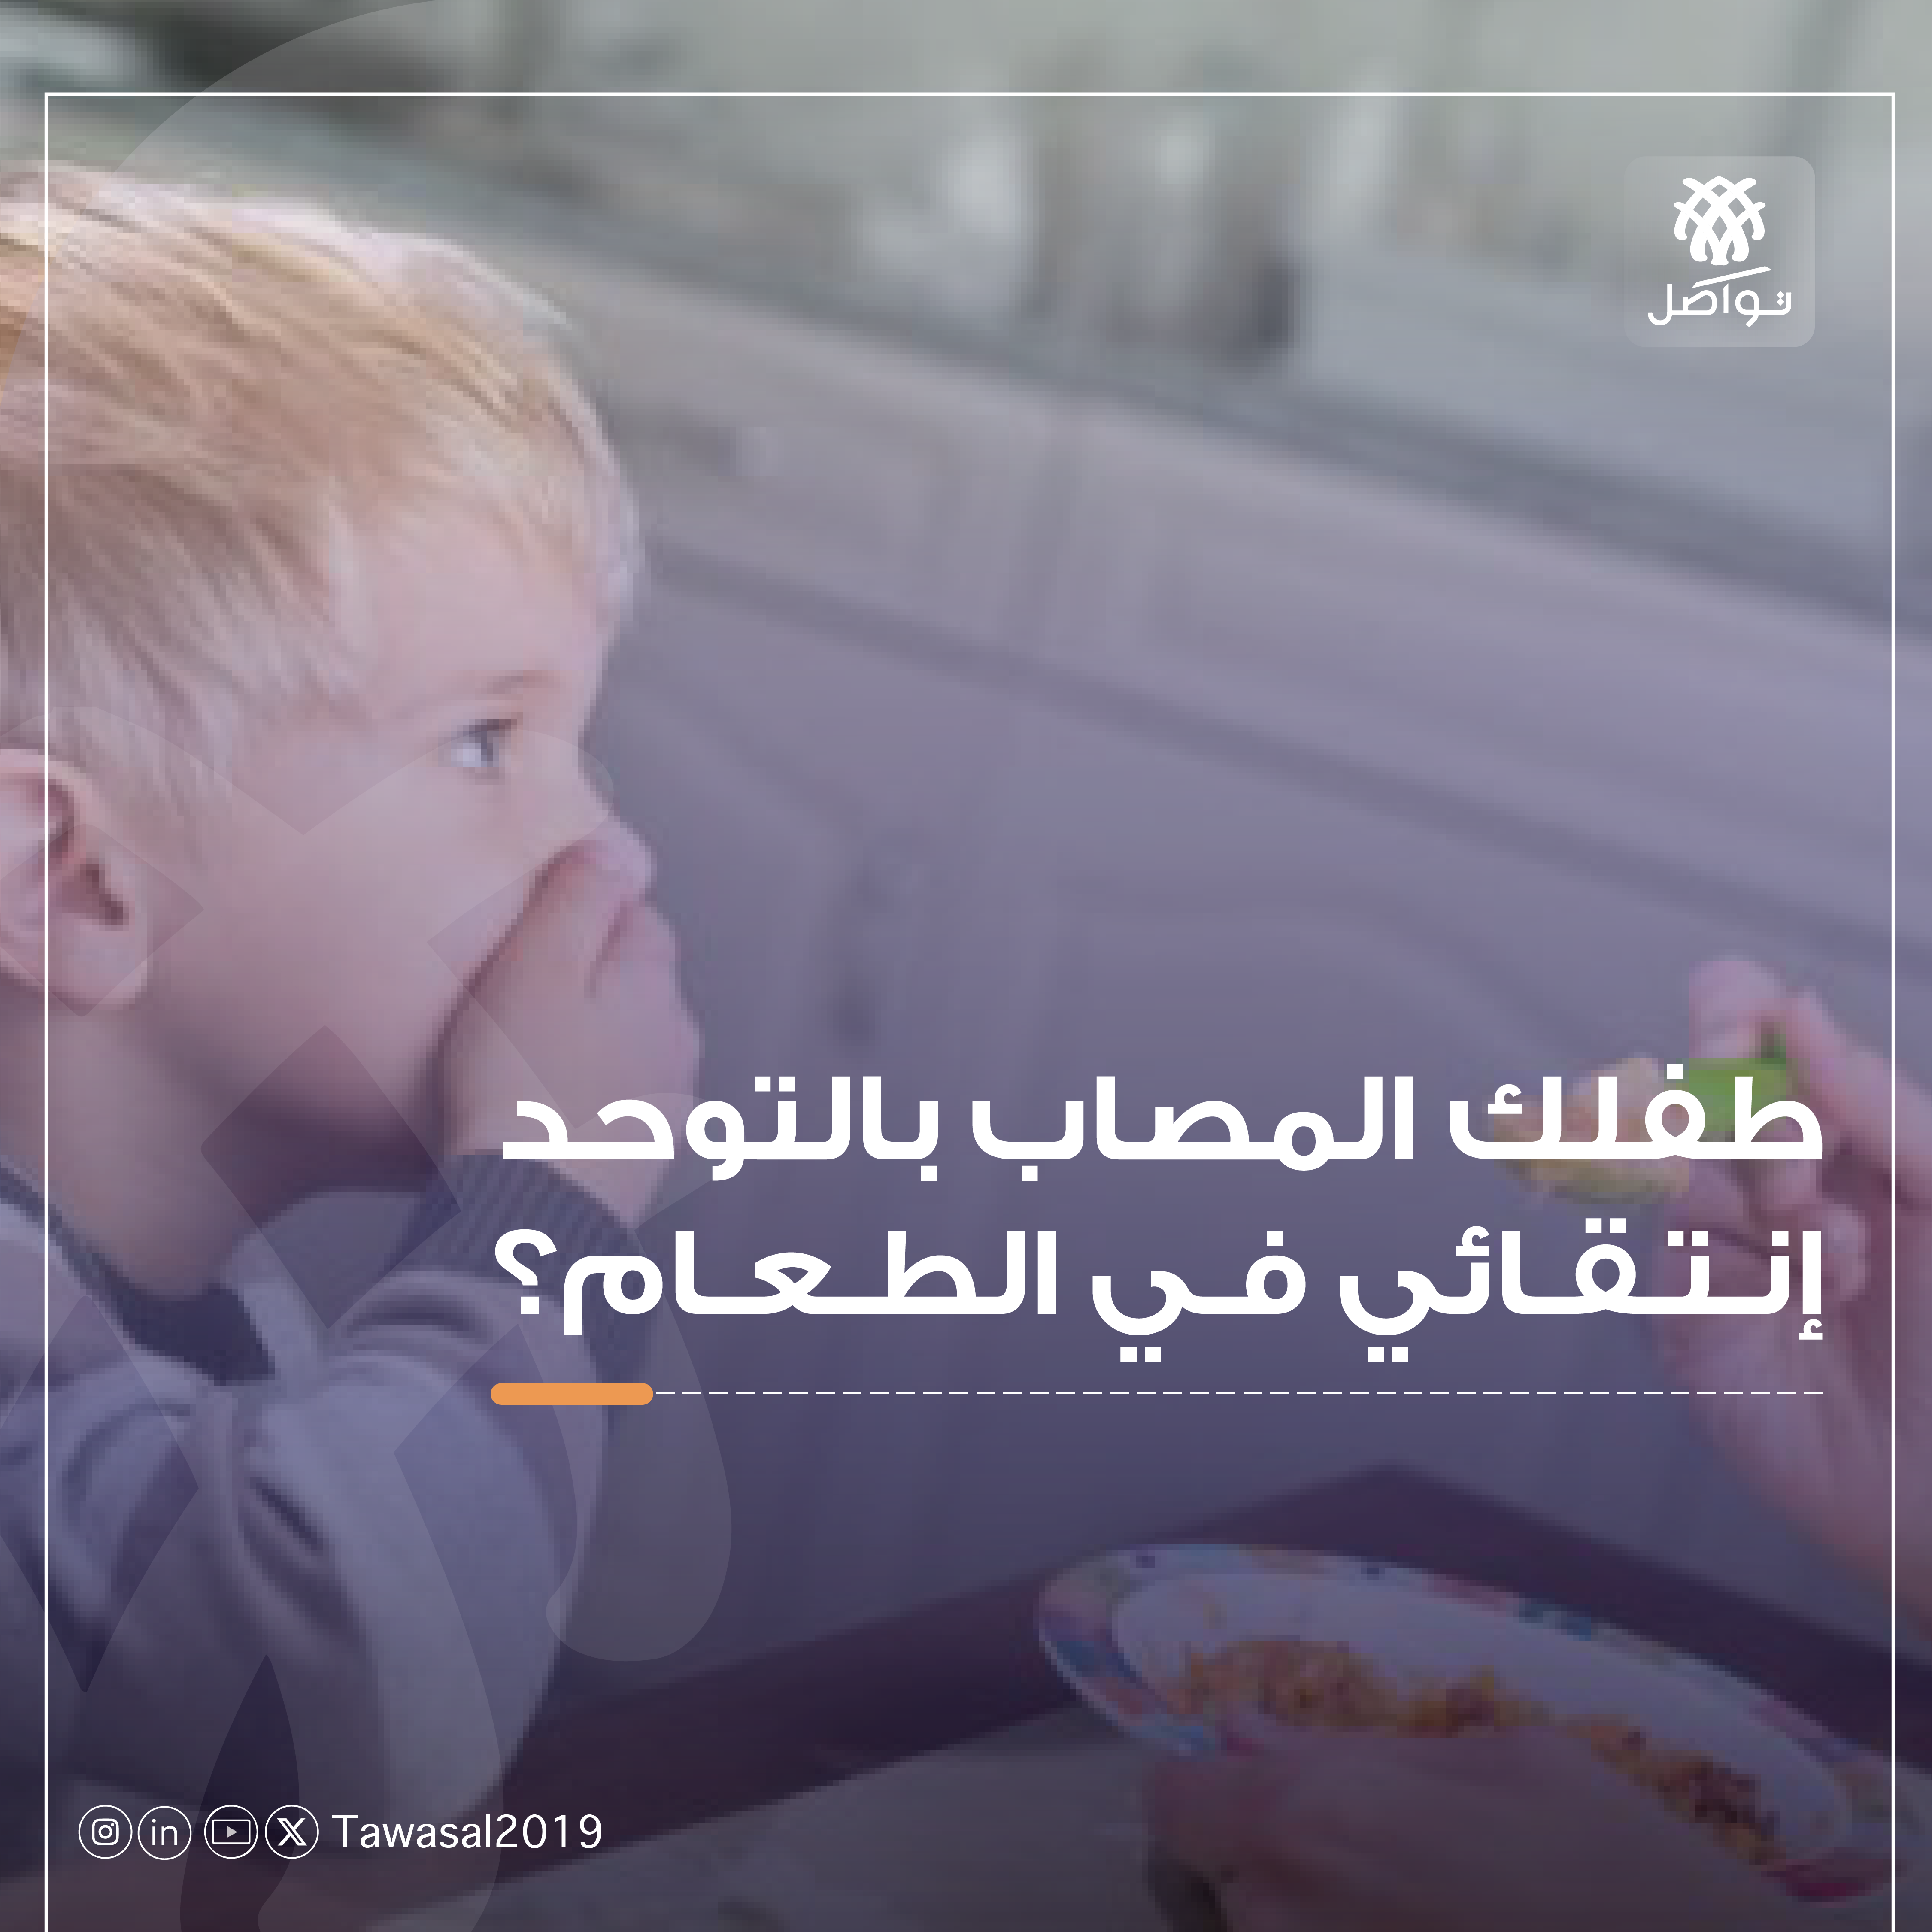 صورة طفل يمتنع عن تناول الطعام